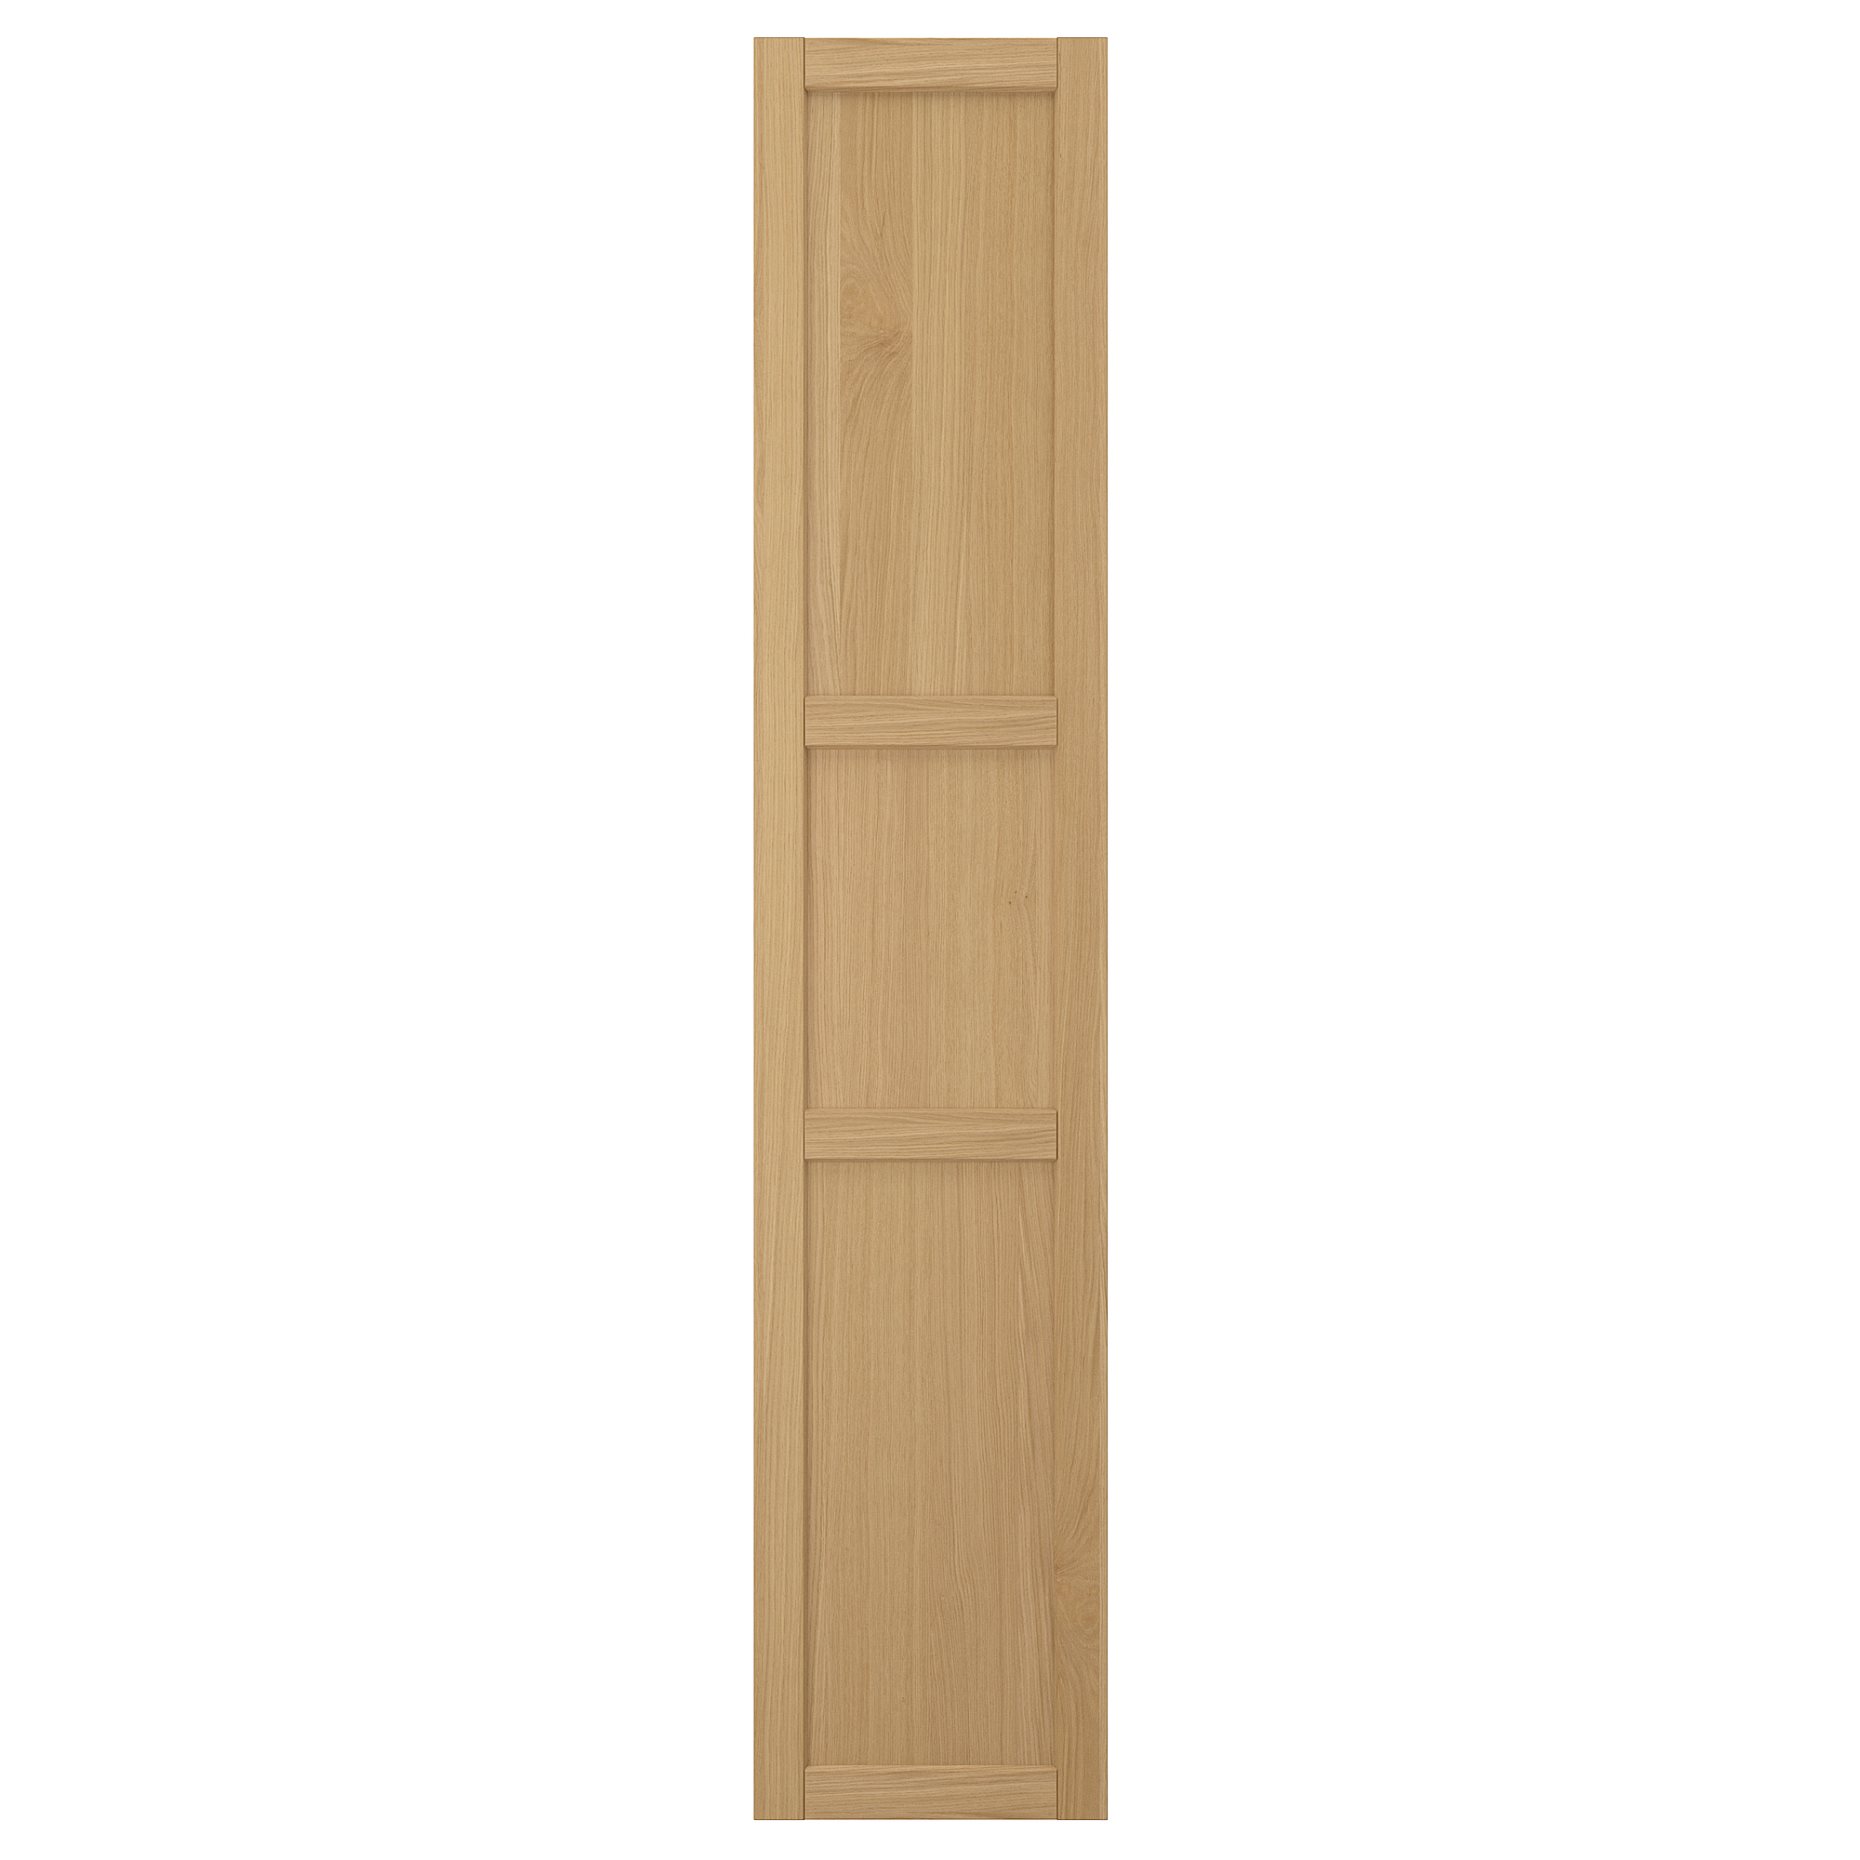 FORSBACKA, door, 40x200 cm, 805.652.31